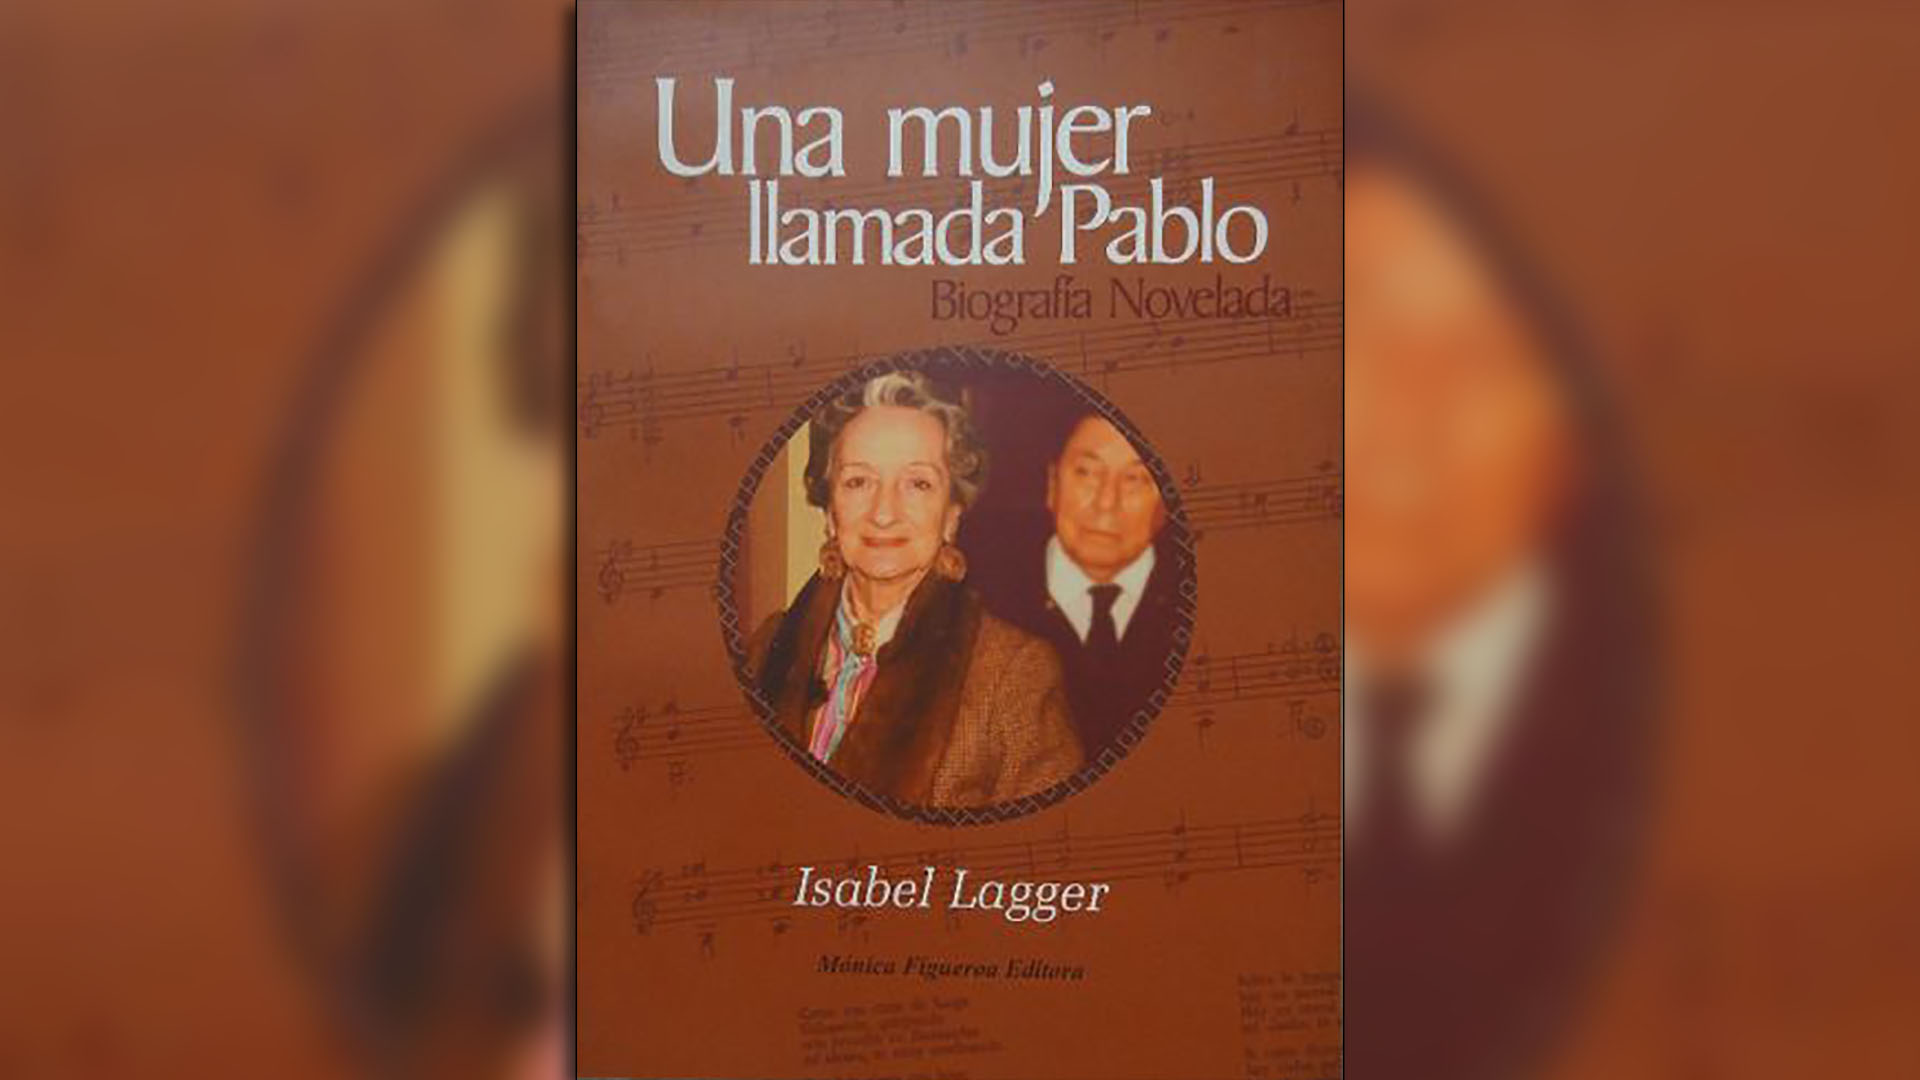 Tapa del libro "Una mujer llamada Pablo" de Isabel Lagger